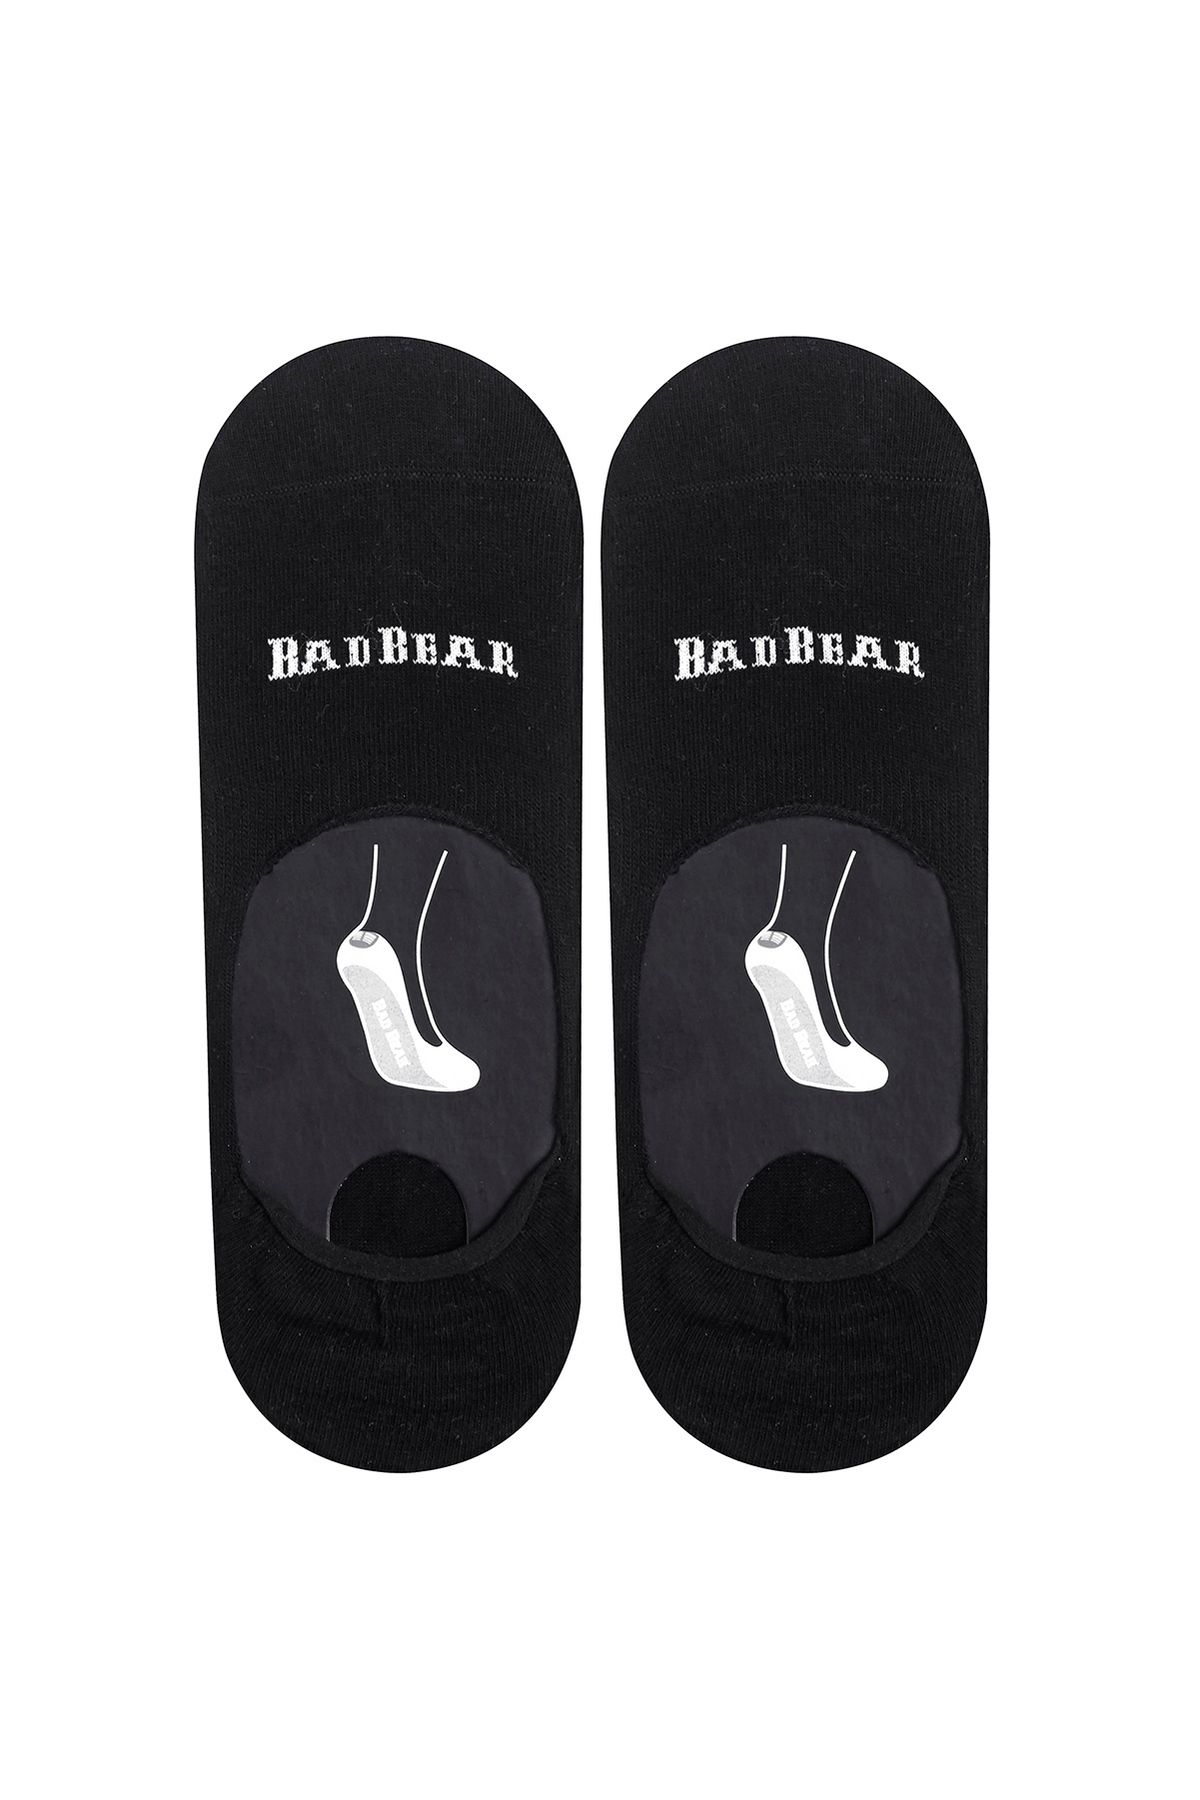 Bad Bear Core Zero Siyah Unisex Babet Çorap